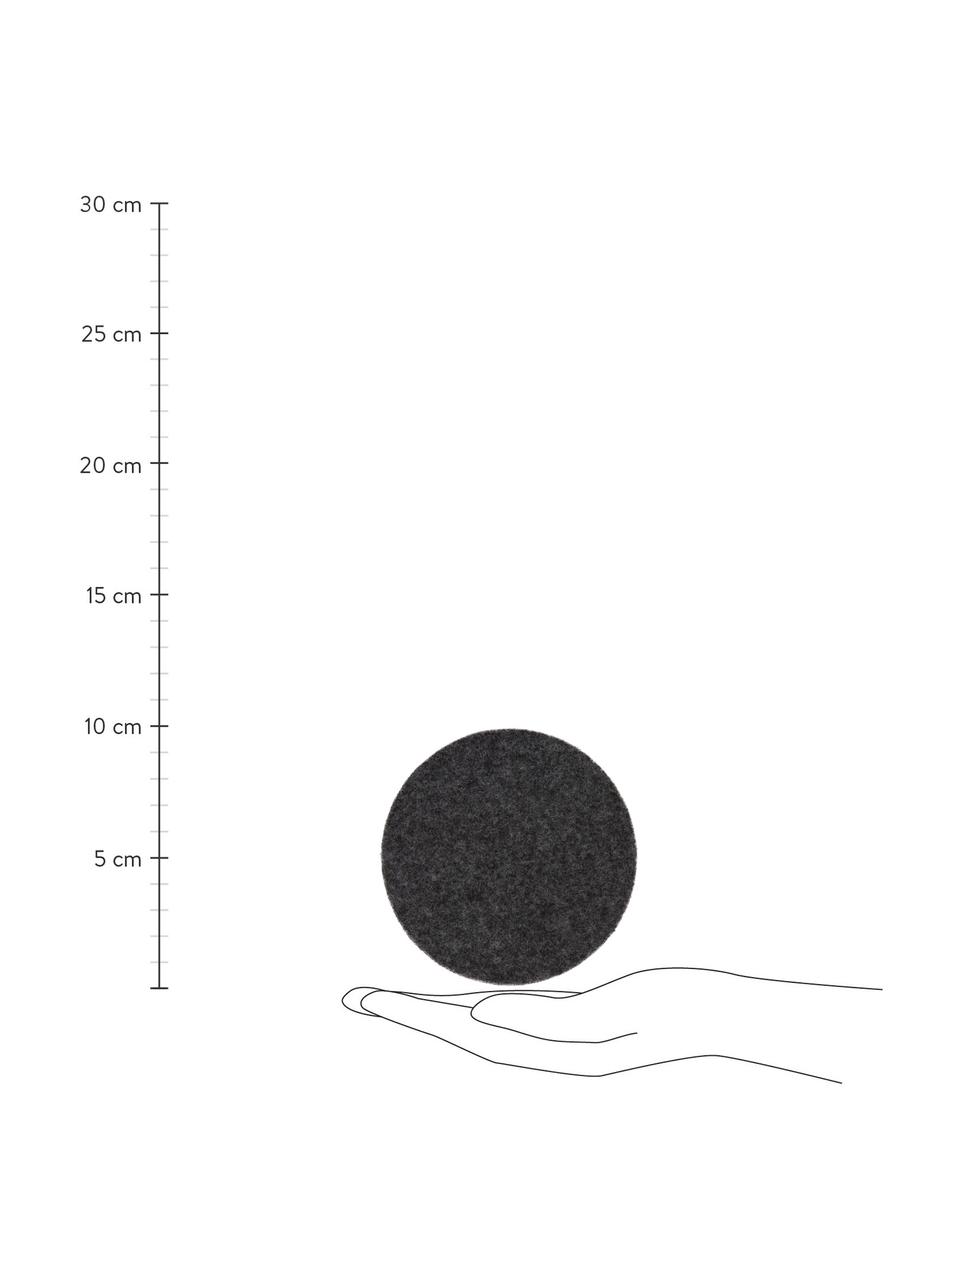 Wollfilz-Untersetzer Leandra in Anthrazit, 6 Stück, 90% Wolle, 10% Polyethylen, Anthrazit, Ø 10 cm